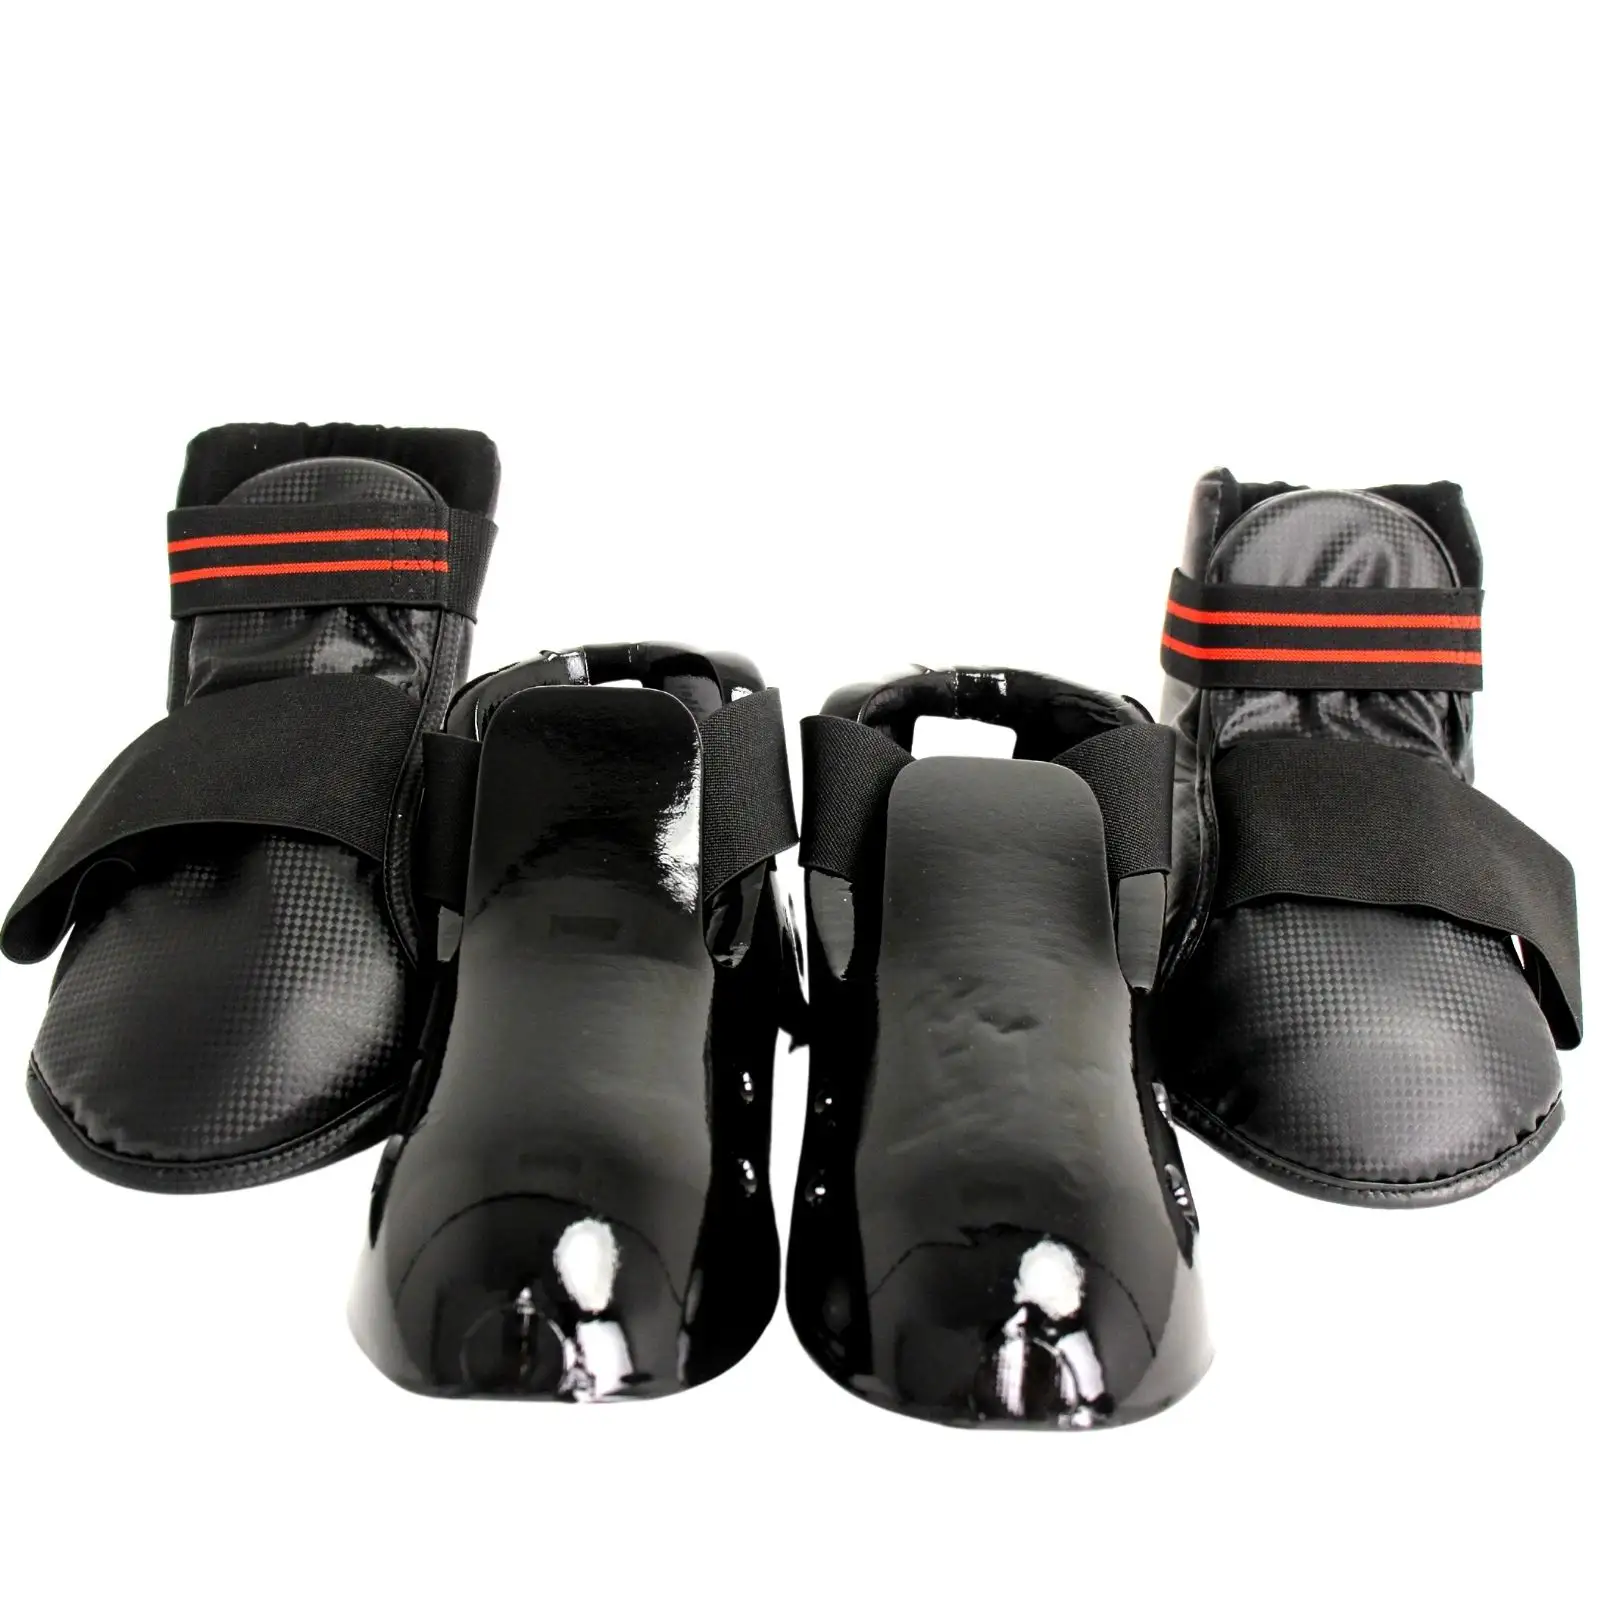 12 Peça Taekwondo Protector Equipment, Sparring engrenagem Set com protetor de cabeça, protetor de peito, pé guarda e guarda Mão